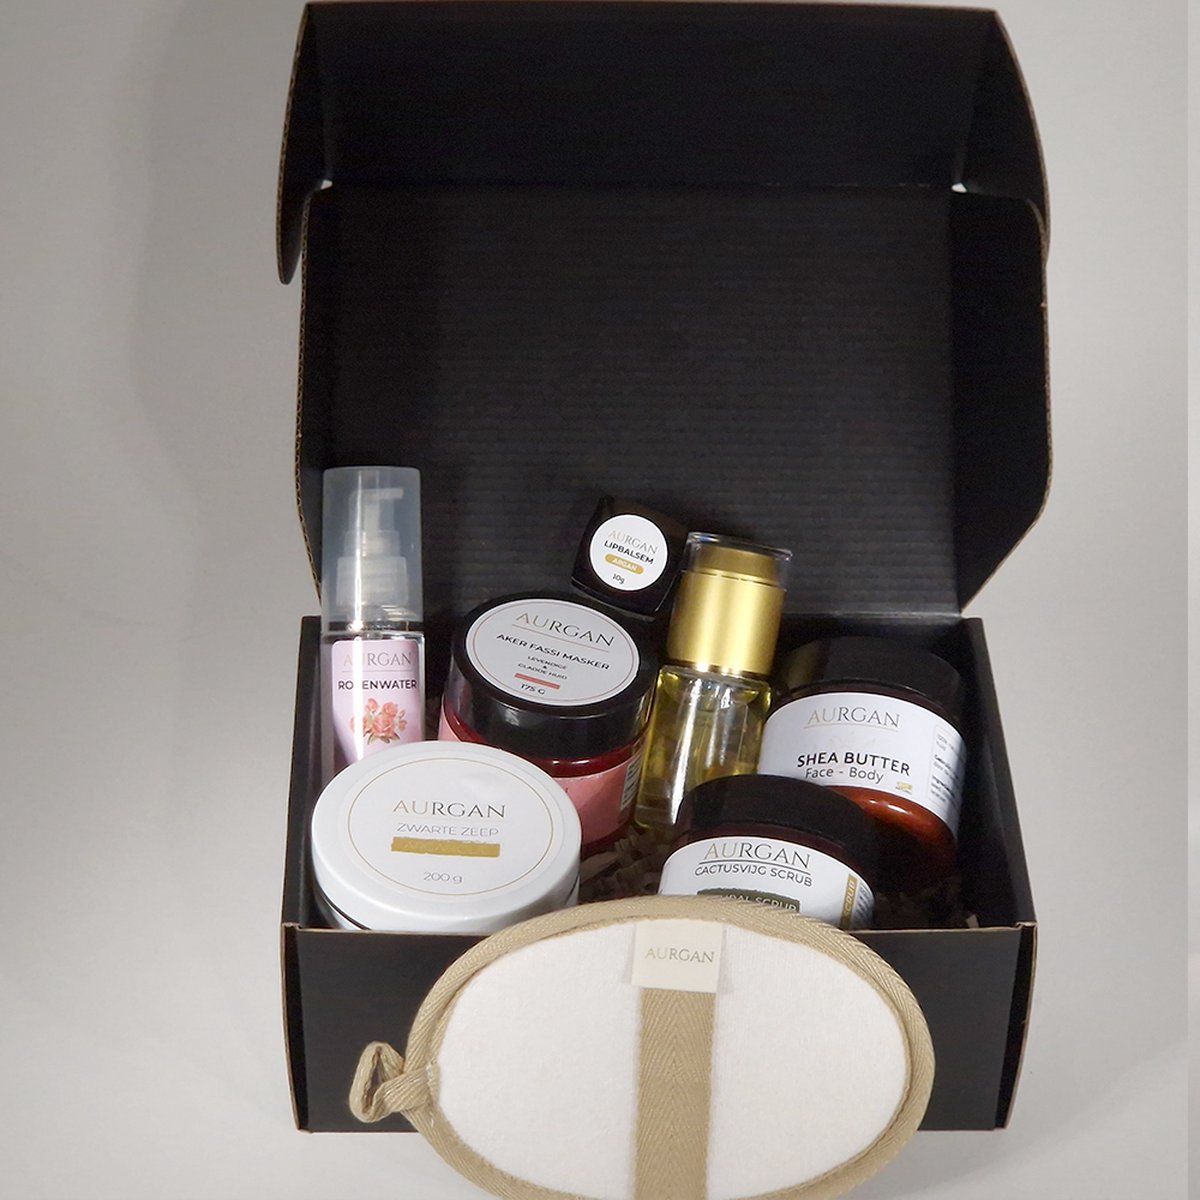 Aurgan Exquisite Gift Box - Aker Fassi / Relatiegeschenk - Arganolie kadopakket - Natuurlijke Cosmetica - Shea Butter - Cactusvijgscrub